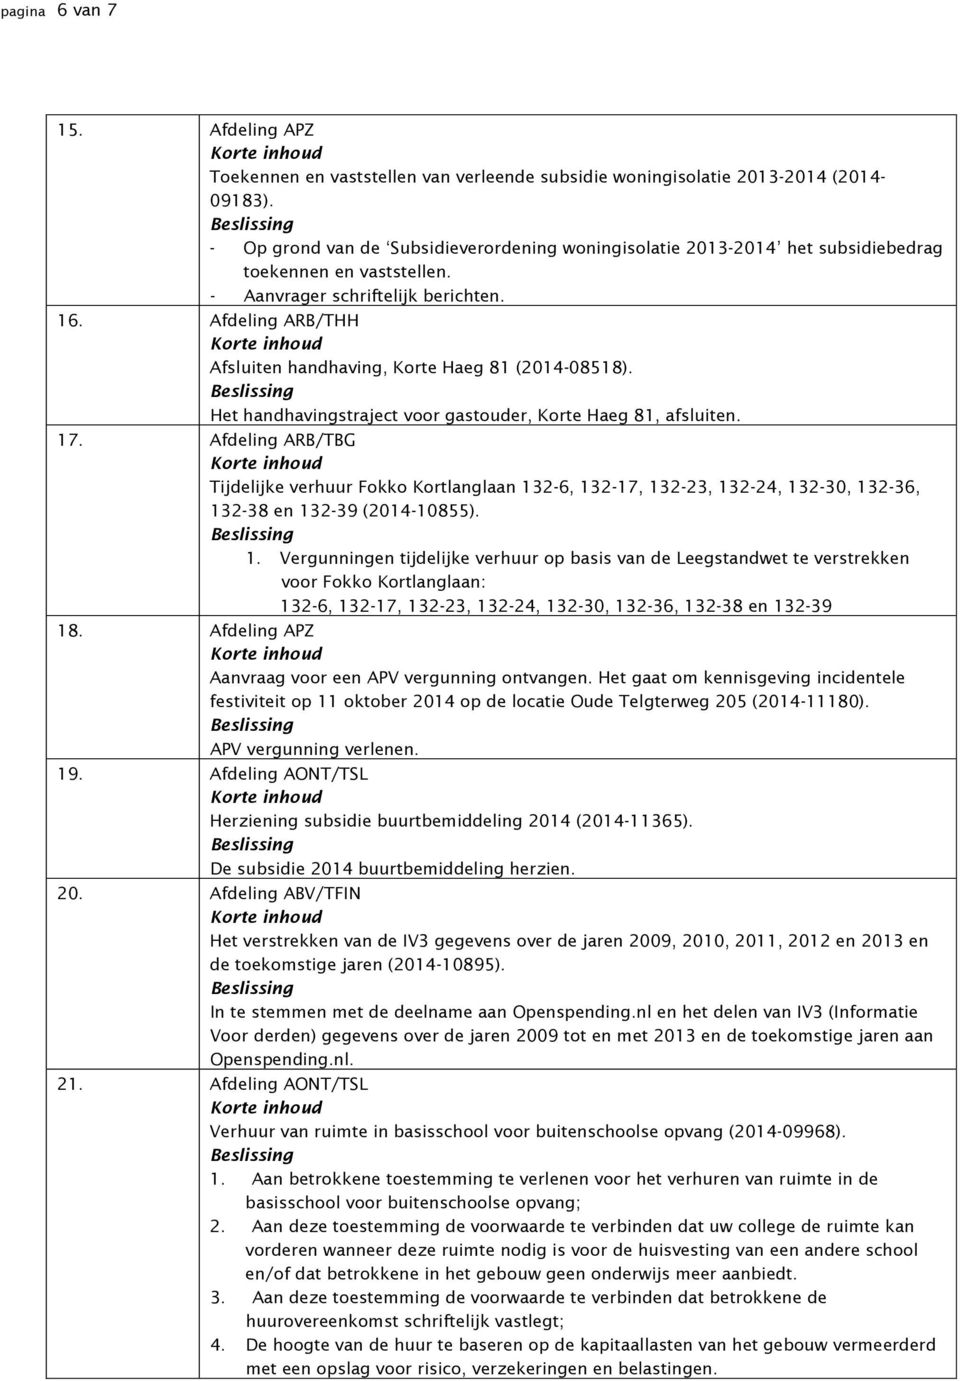 Afdeling ARB/THH Afsluiten handhaving, Korte Haeg 81 (2014-08518). Het handhavingstraject voor gastouder, Korte Haeg 81, afsluiten. 17.